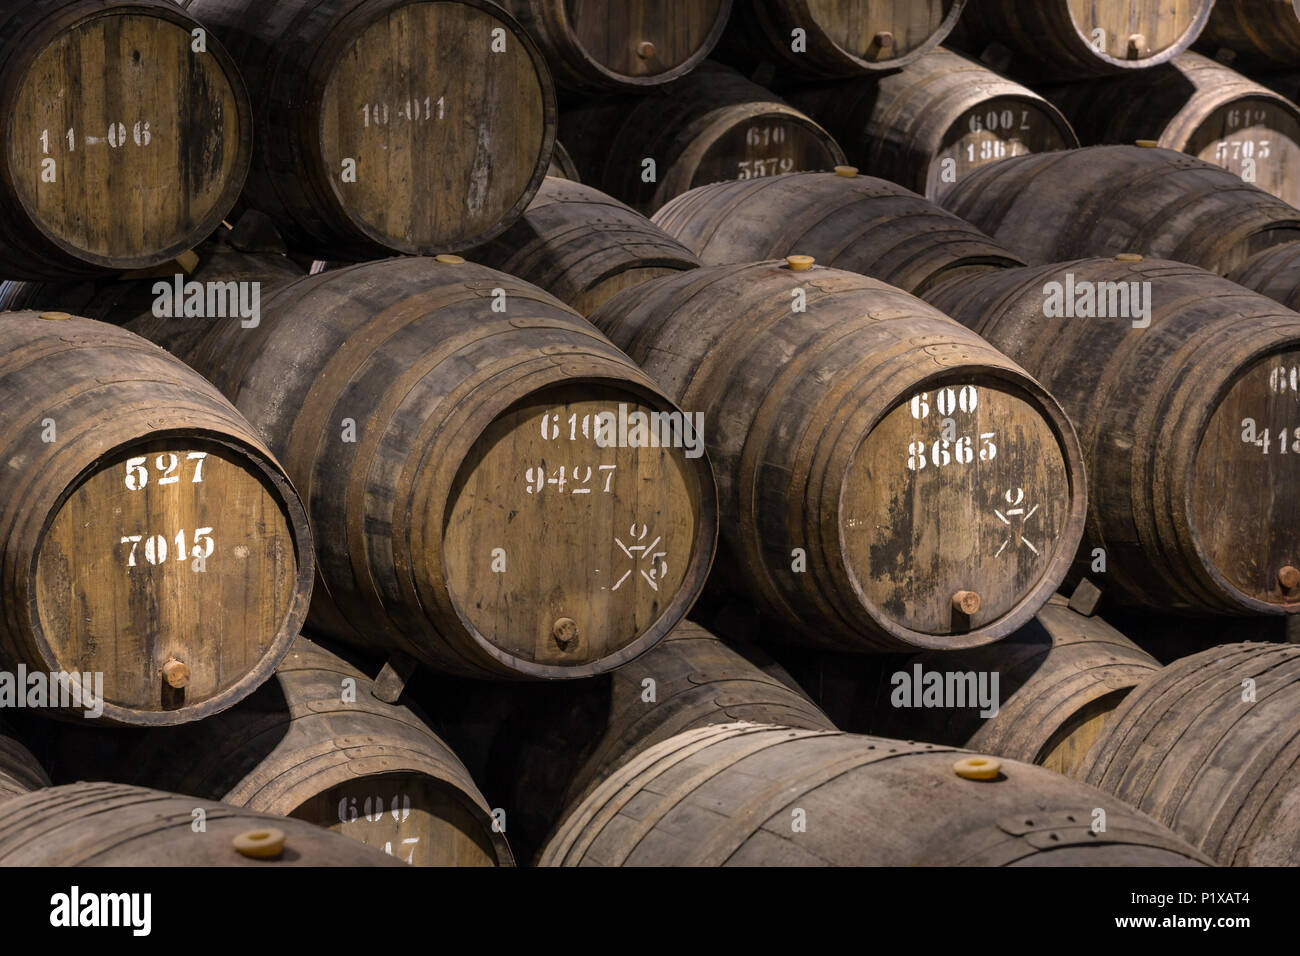 Row of wooden porto wine barrels in wine cellar Porto, Portugal. Stock Photo